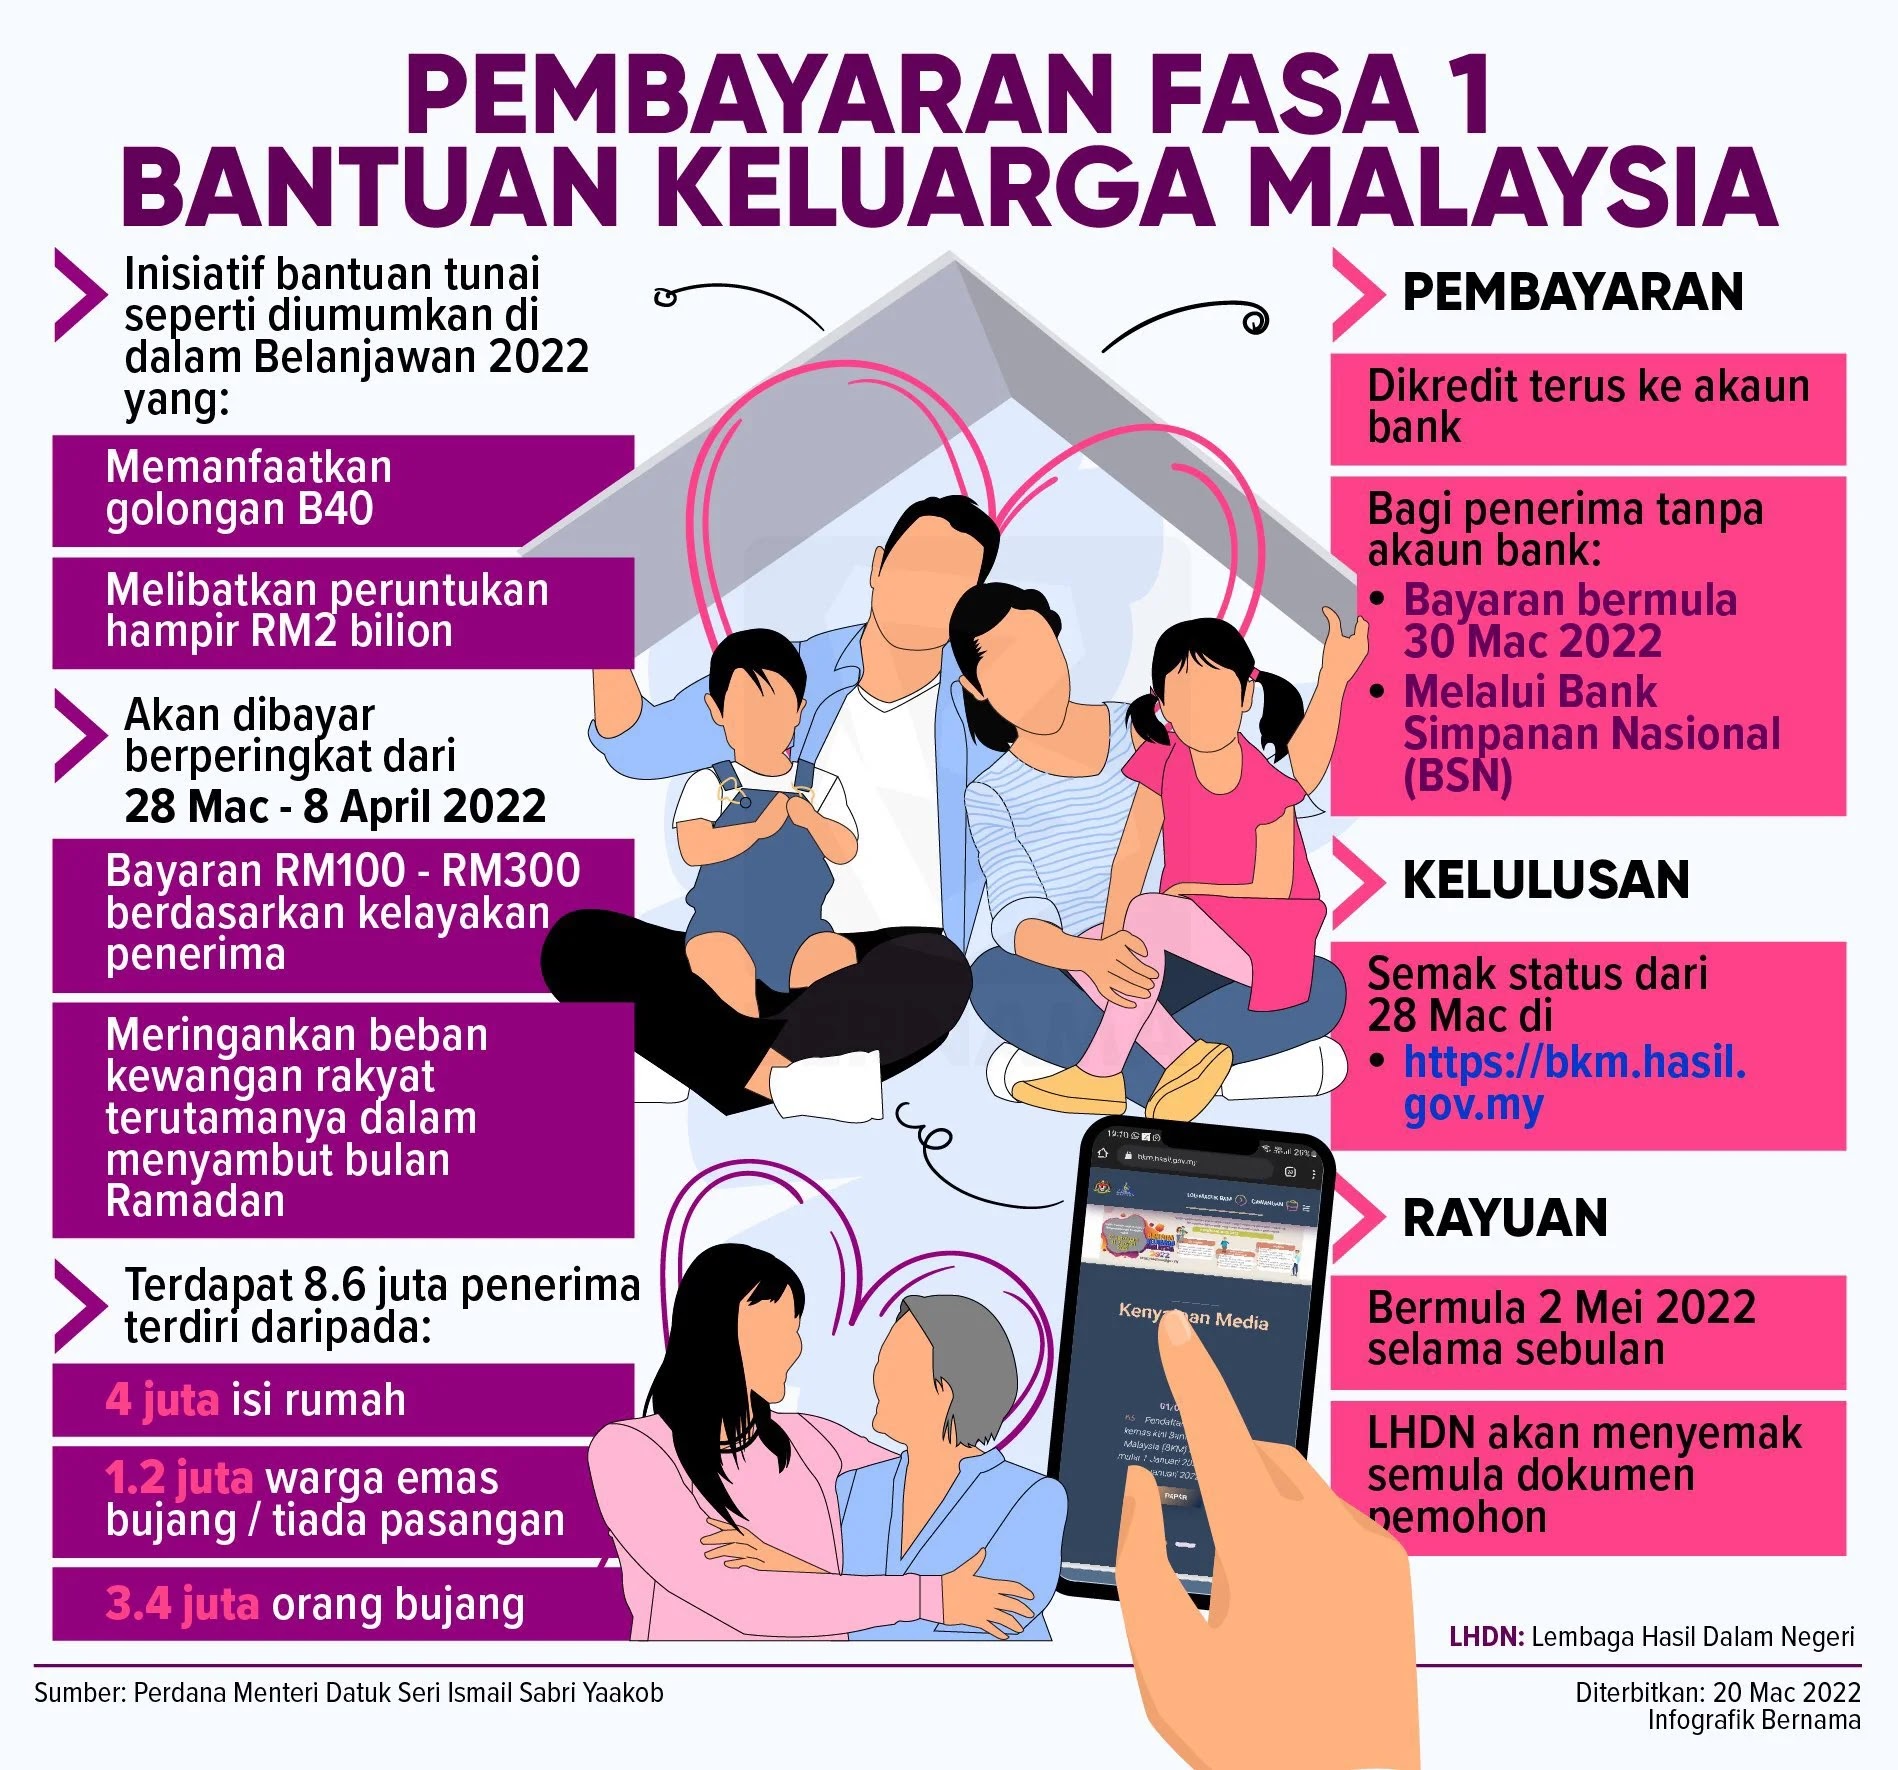 Pembayaran Fasa 1 Bantuan Keluarga Malaysia (BKM) secara berperingkat mulai 28 Mac - 8 April 2022